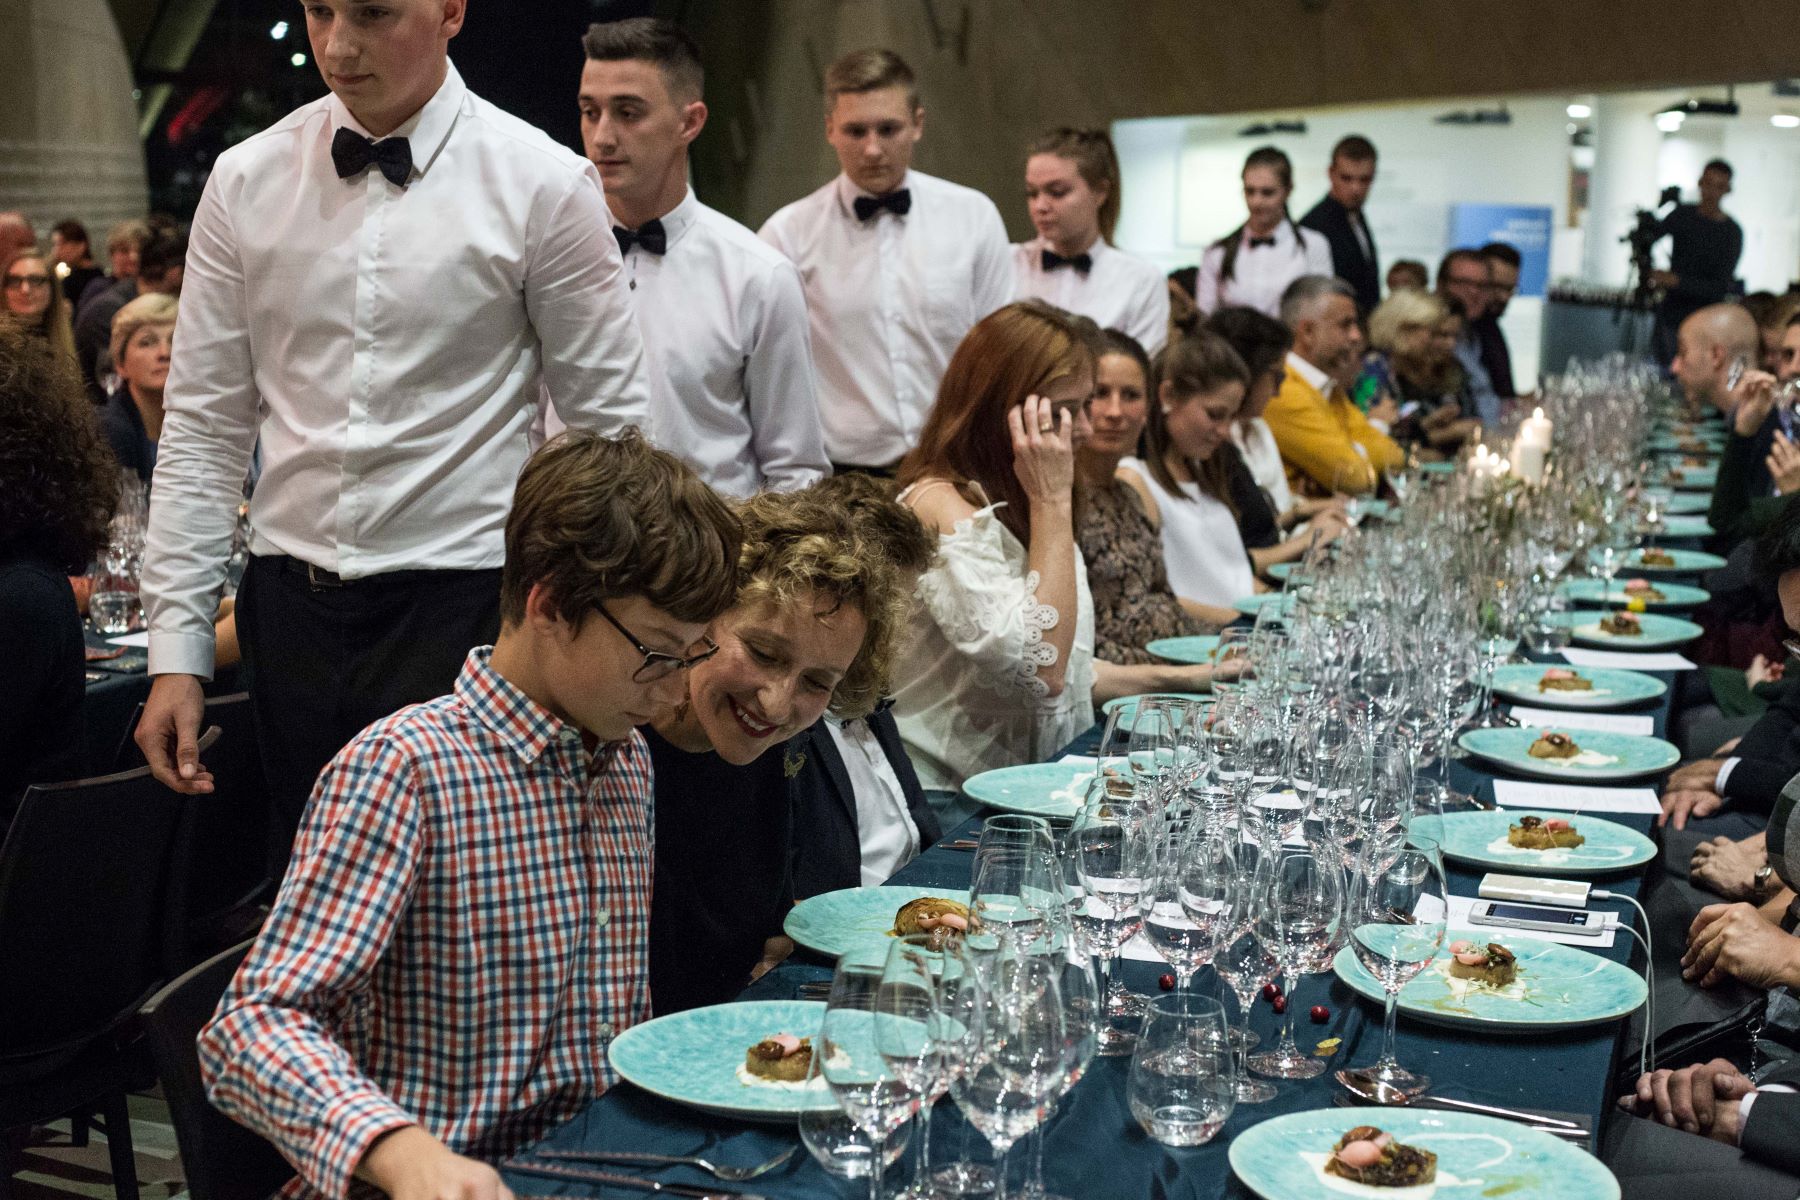 Grupa uczestników kolacji szabatowej siedzi przy zastawionym stole. Wokół kelnerzy w koszulach i muszkach.